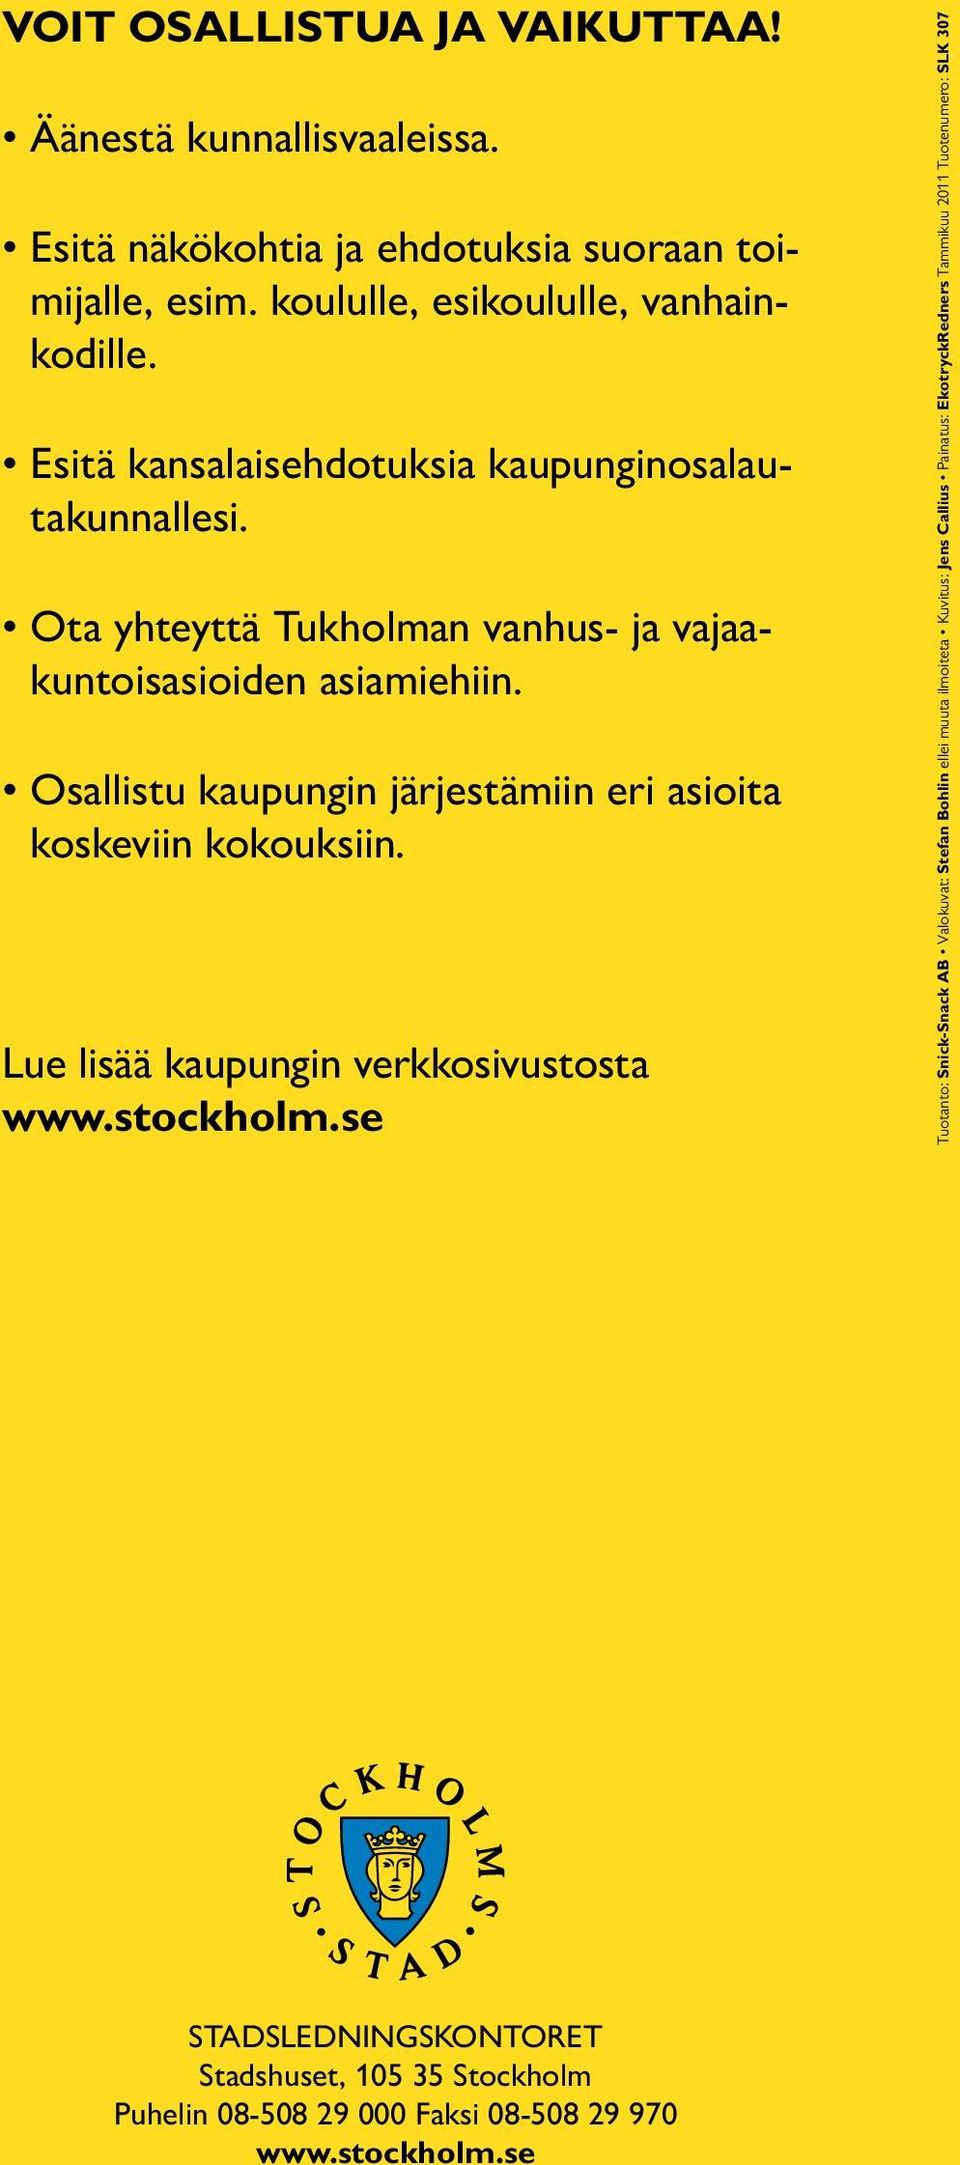 Osallistu kaupungin järjestämiin eri asioita koskeviin kokouksiin. Lue lisää kaupungin verkkosivustosta www.stockholm.